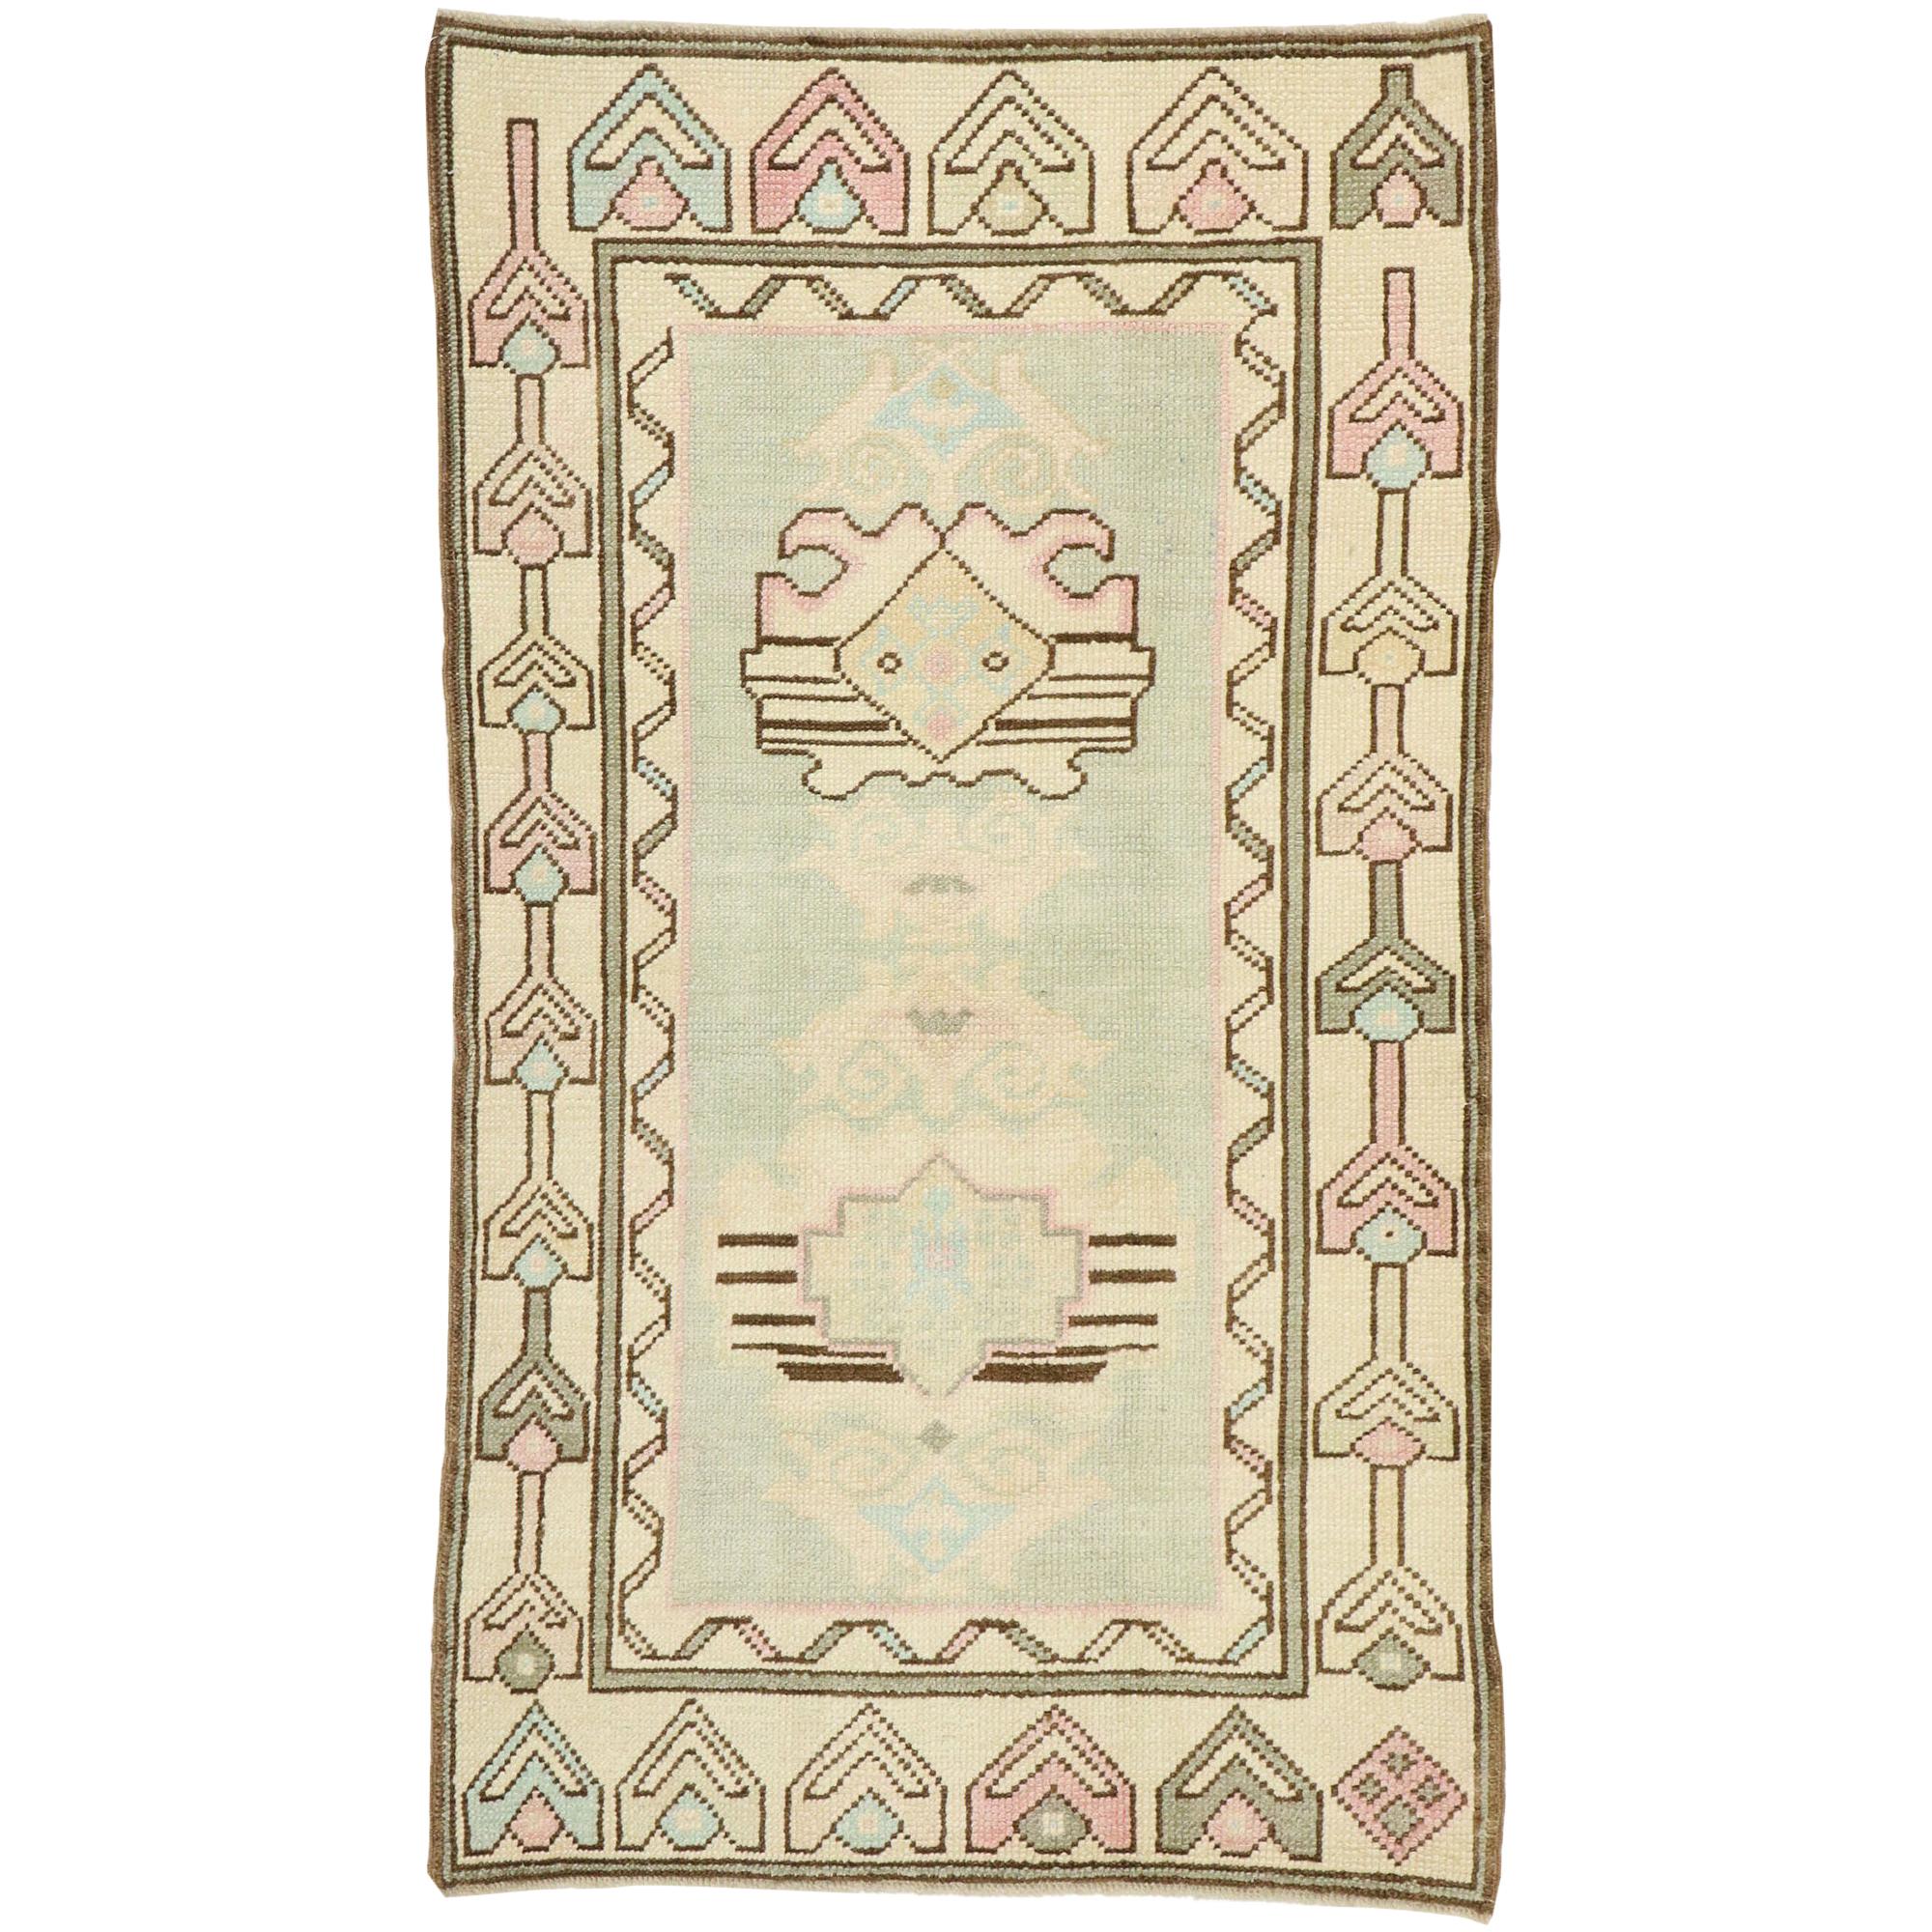 Türkischer Oushak-Teppich im französischen Vintage-Stil mit romantischem georgianischem Landhausstil